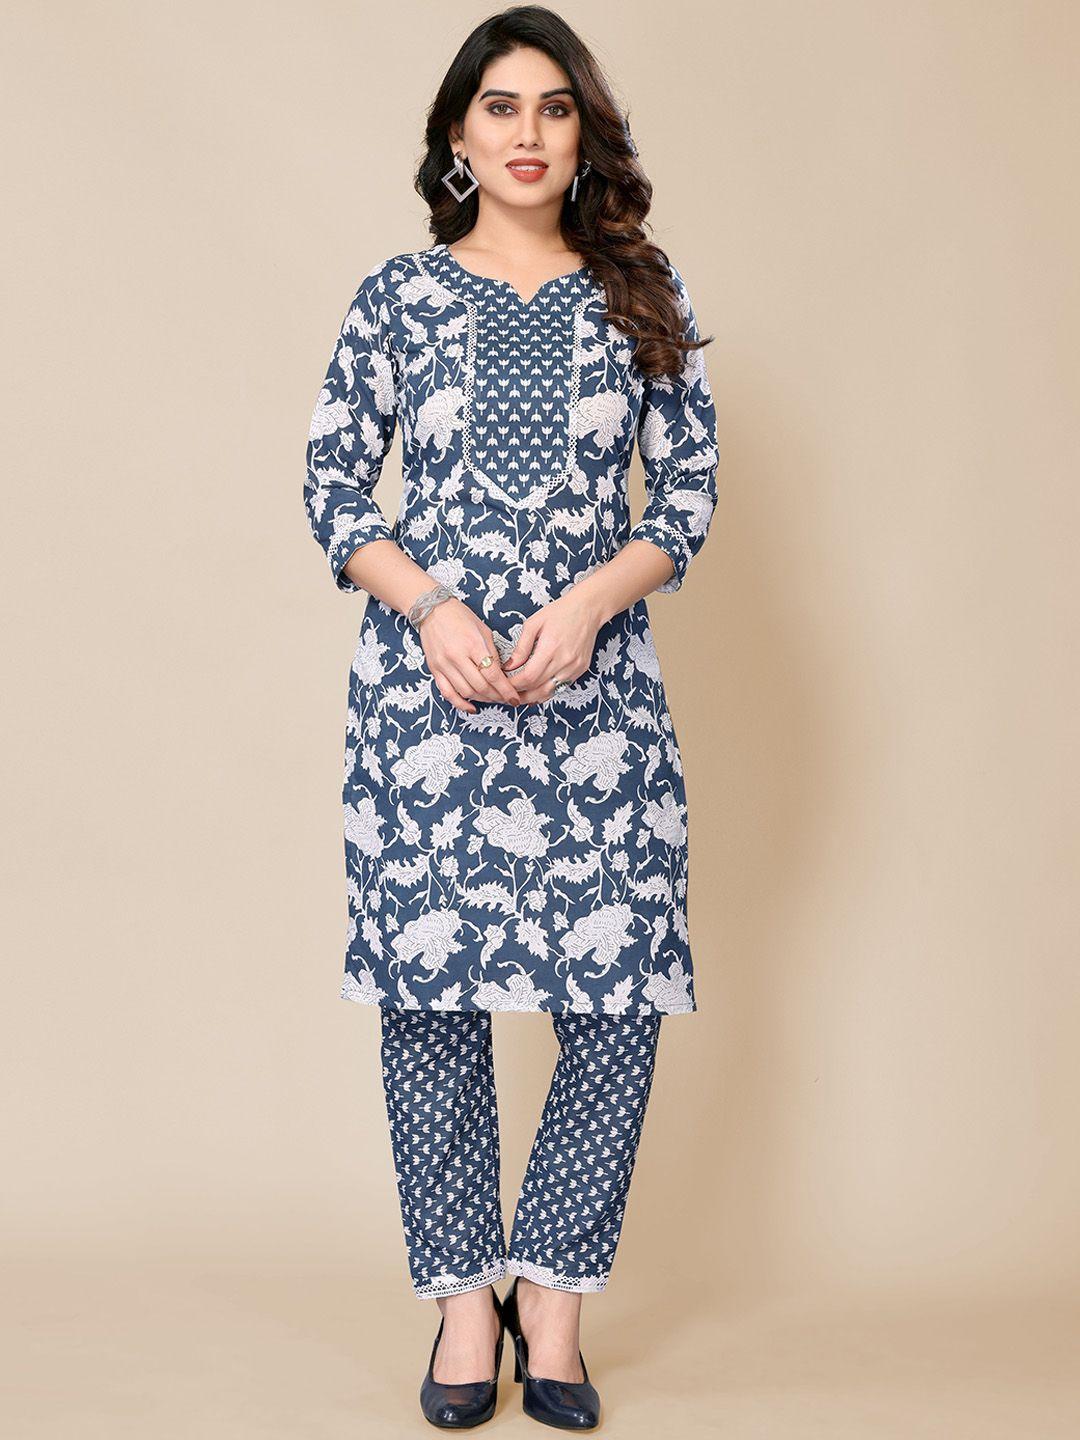 pyari - a style for every story floral printed straight kurta with pyjamas